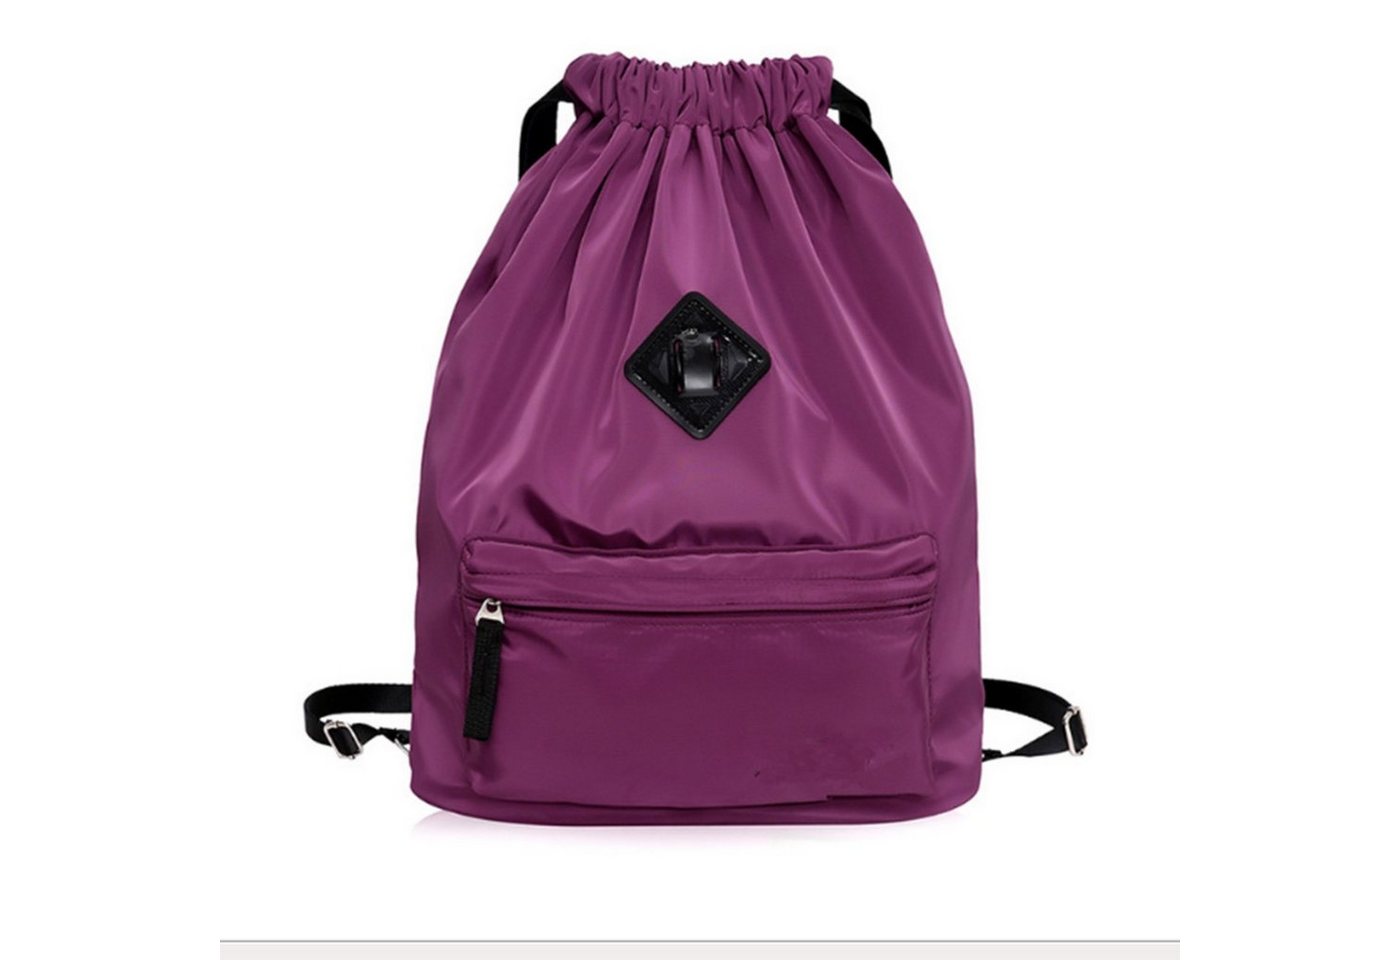 H-basics Rucksack Rucksack Tasche 43*40*15cm mit Kordel zum Zuziehen Turnbeutel mit Kordelzug für Kinder, Teenager oder Erwachsene - Unisex Sporttasche oder Schultasche von H-basics